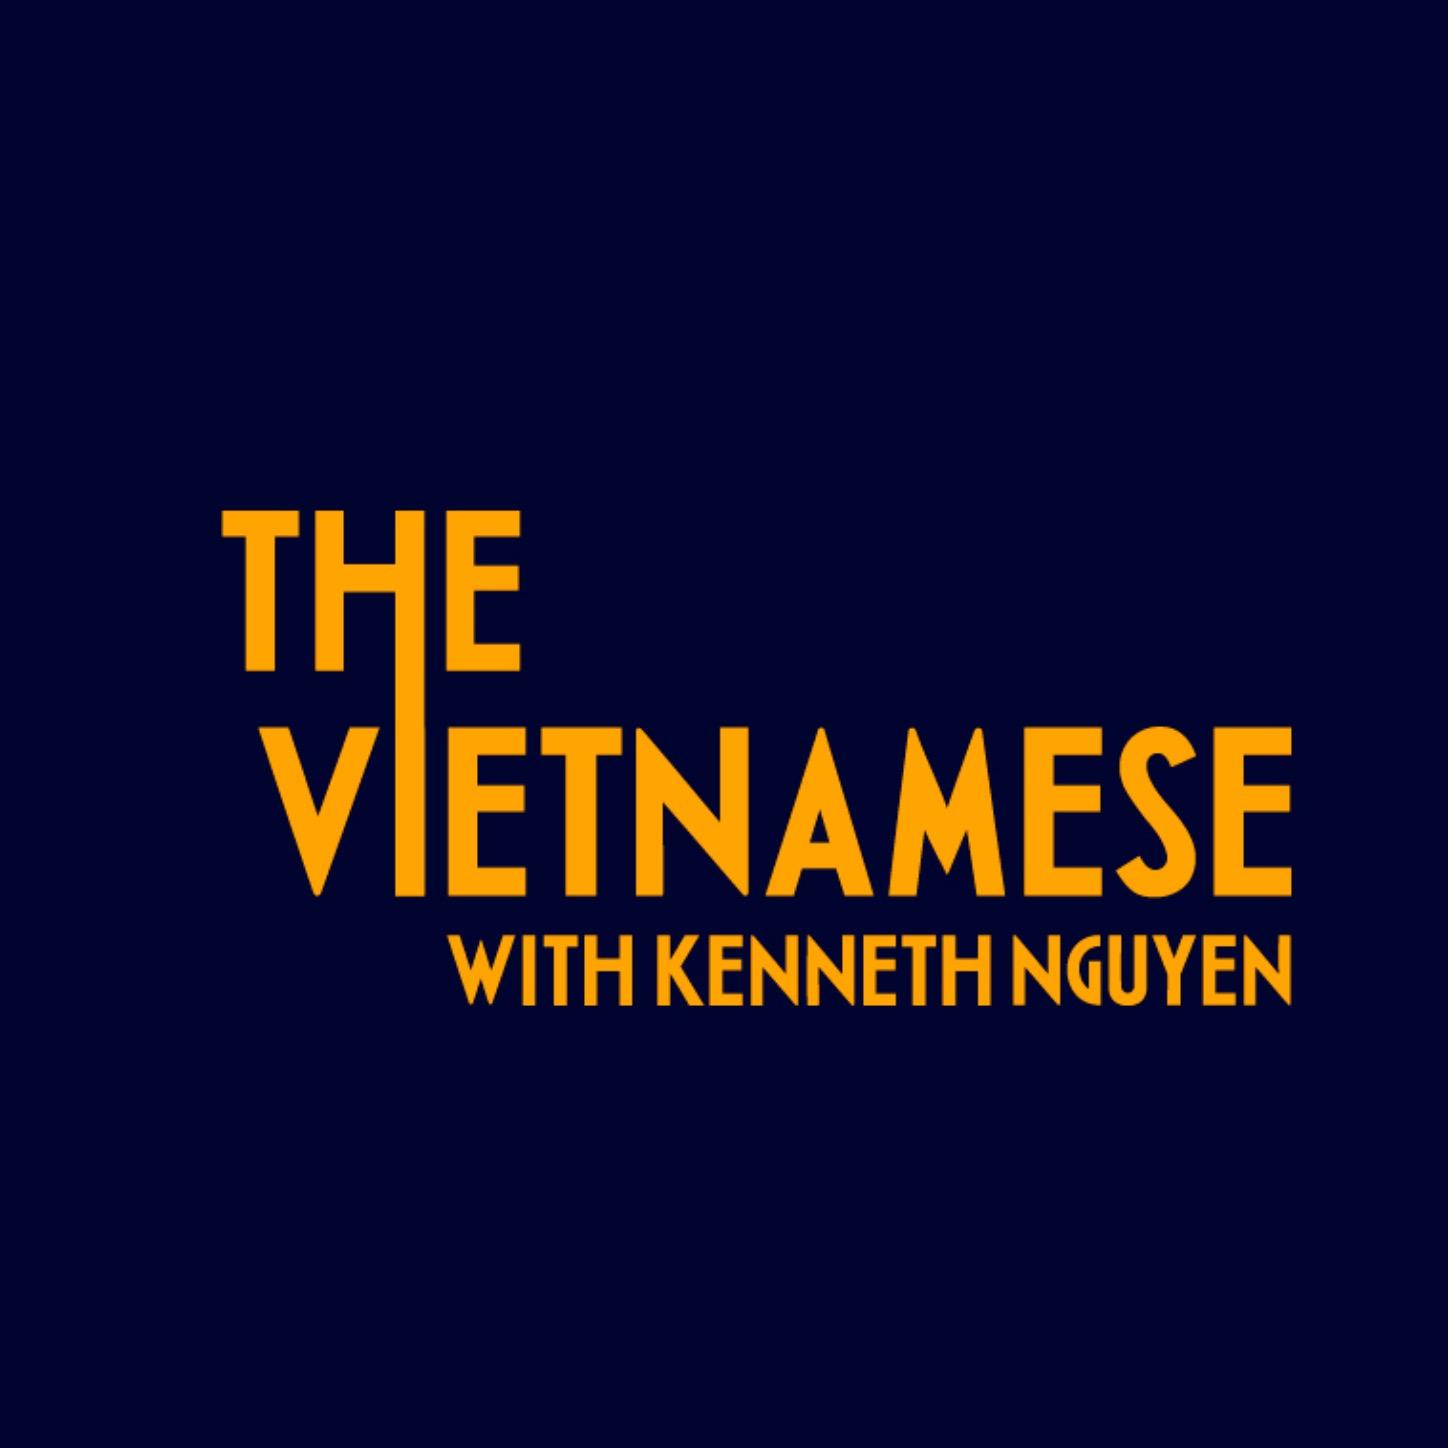 Podcast The Vietnamese của Kenneth Nguyen là một trong những chương trình đấu tranh cho giọng nói của người Việt Nam trong xã hội Mỹ. Nếu bạn quan tâm đến việc nâng cao nhận thức về văn hóa và xã hội, cũng như liên kết với những câu chuyện của người Việt, hãy xem hình ảnh liên quan để có thêm thông tin.